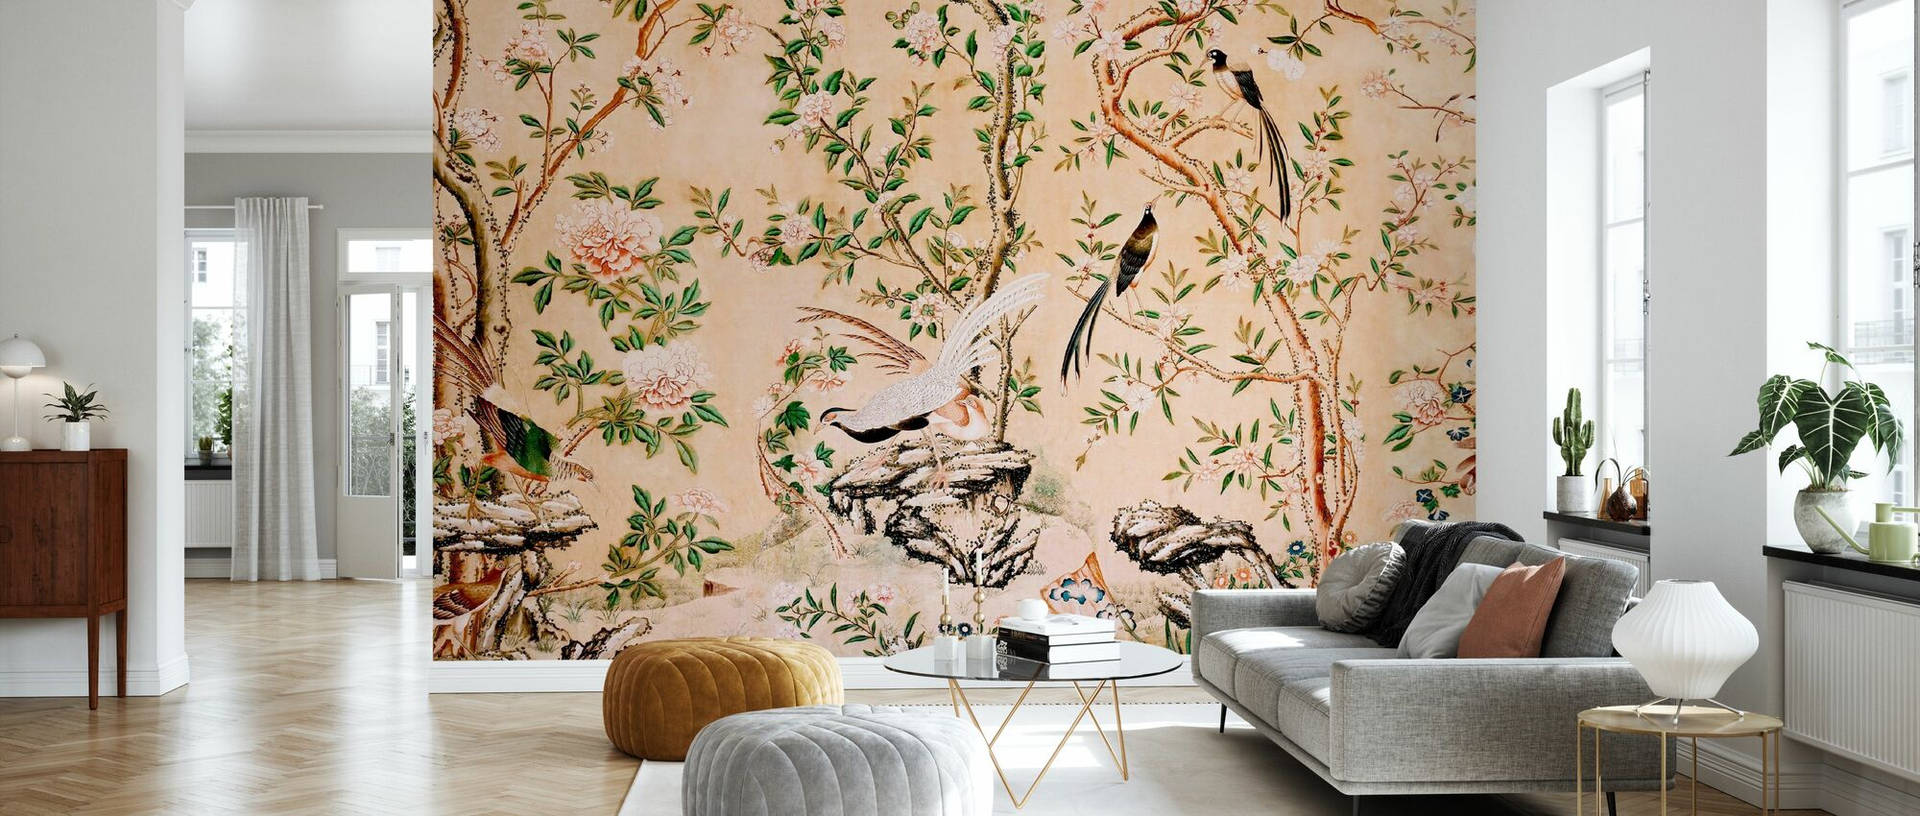 Chinoiserie Living Room Wallpaper: Strålene farver og detaljer præger denne kinesisk inspirerede stue. Wallpaper